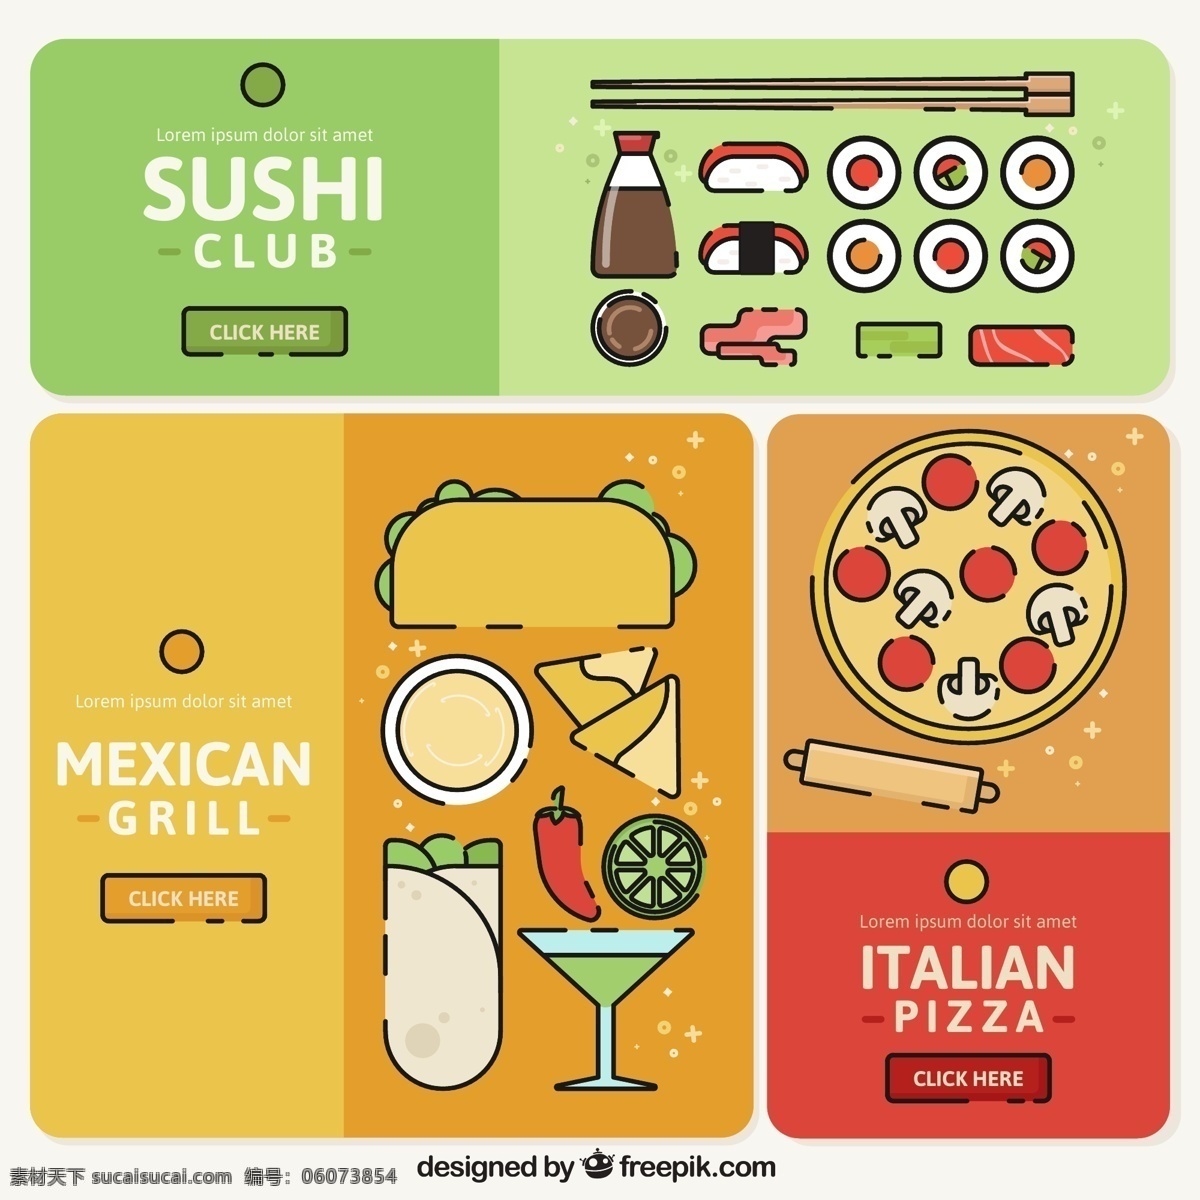 彩绘餐馆宣传 彩绘 餐馆 宣传 筷子 披萨 墨西哥卷饼 辣椒 蘸料 广告海报设计 招贴设计